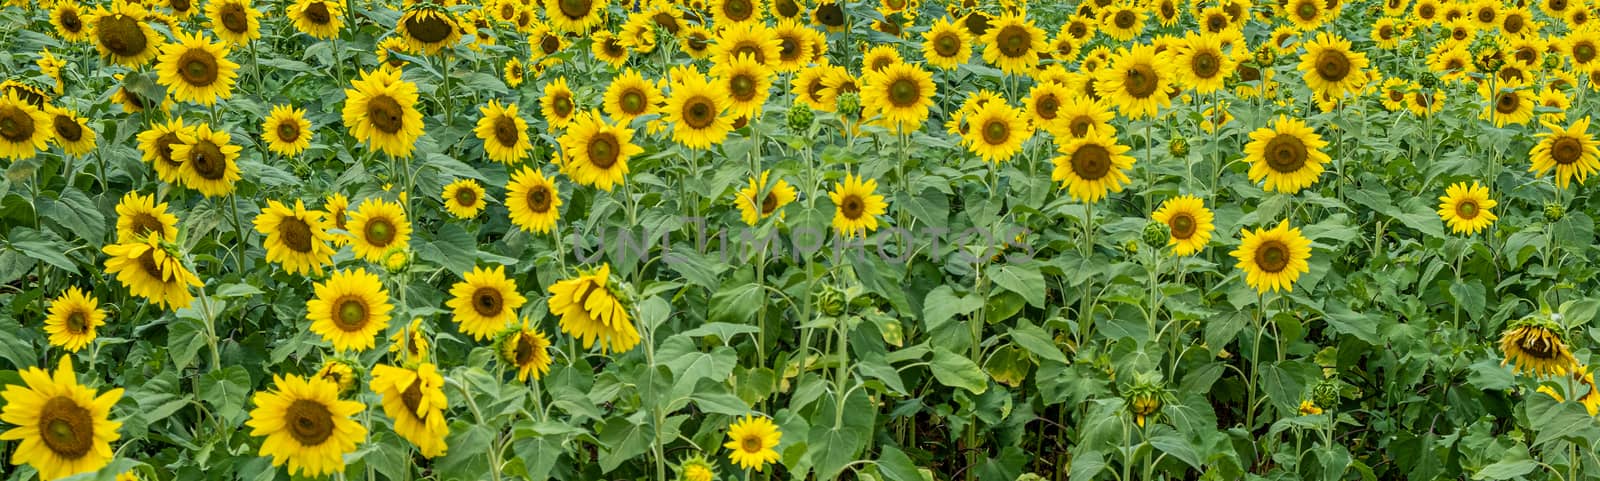 Sunflower Panorama by dbvirago